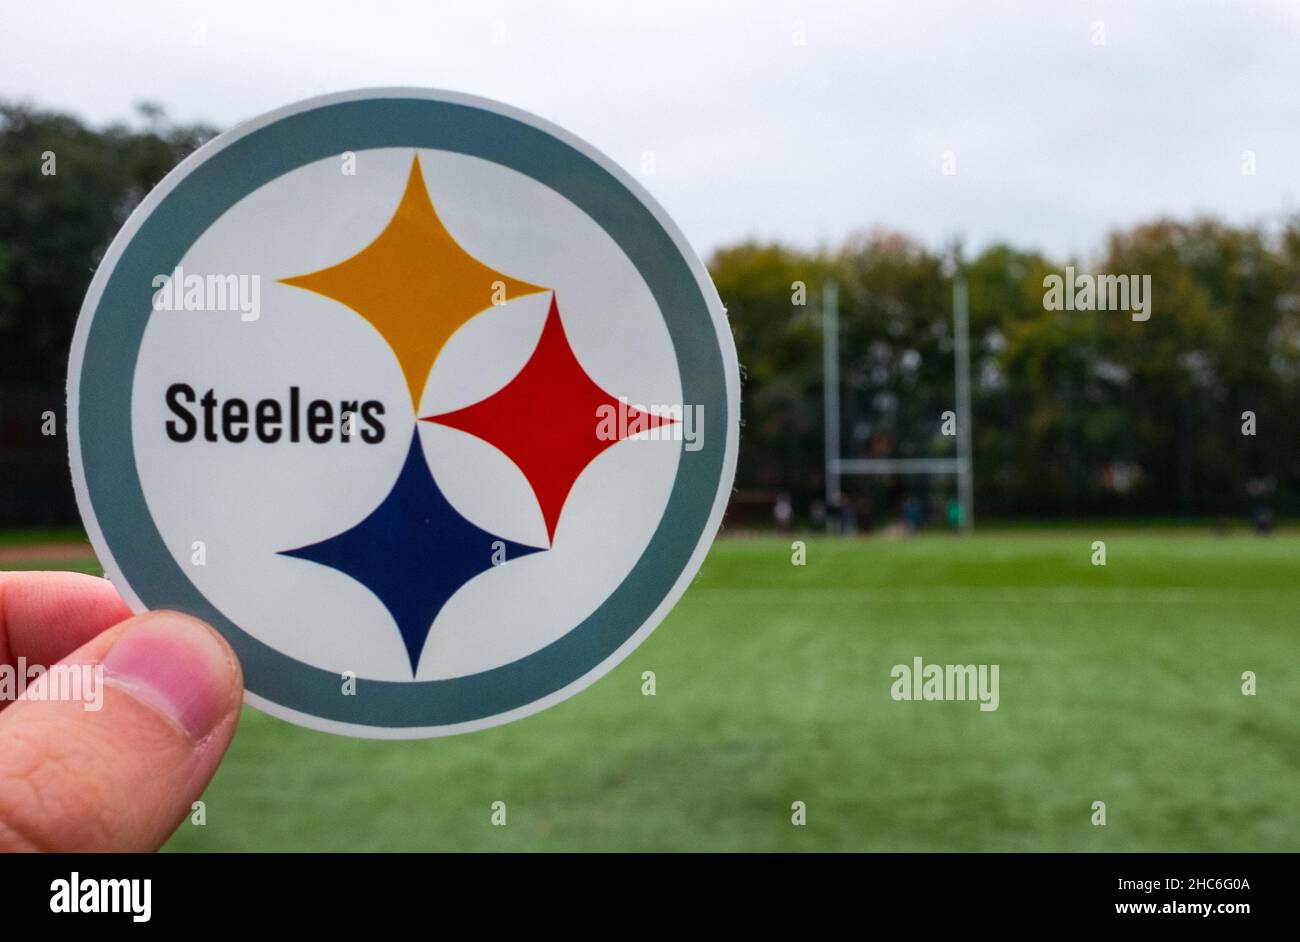 16 de septiembre de 2021, Pittsburgh, PA. Emblema de un equipo de fútbol americano profesional Pittsburgh Steelers con sede en Pittsburgh en el estadio deportivo. Foto de stock